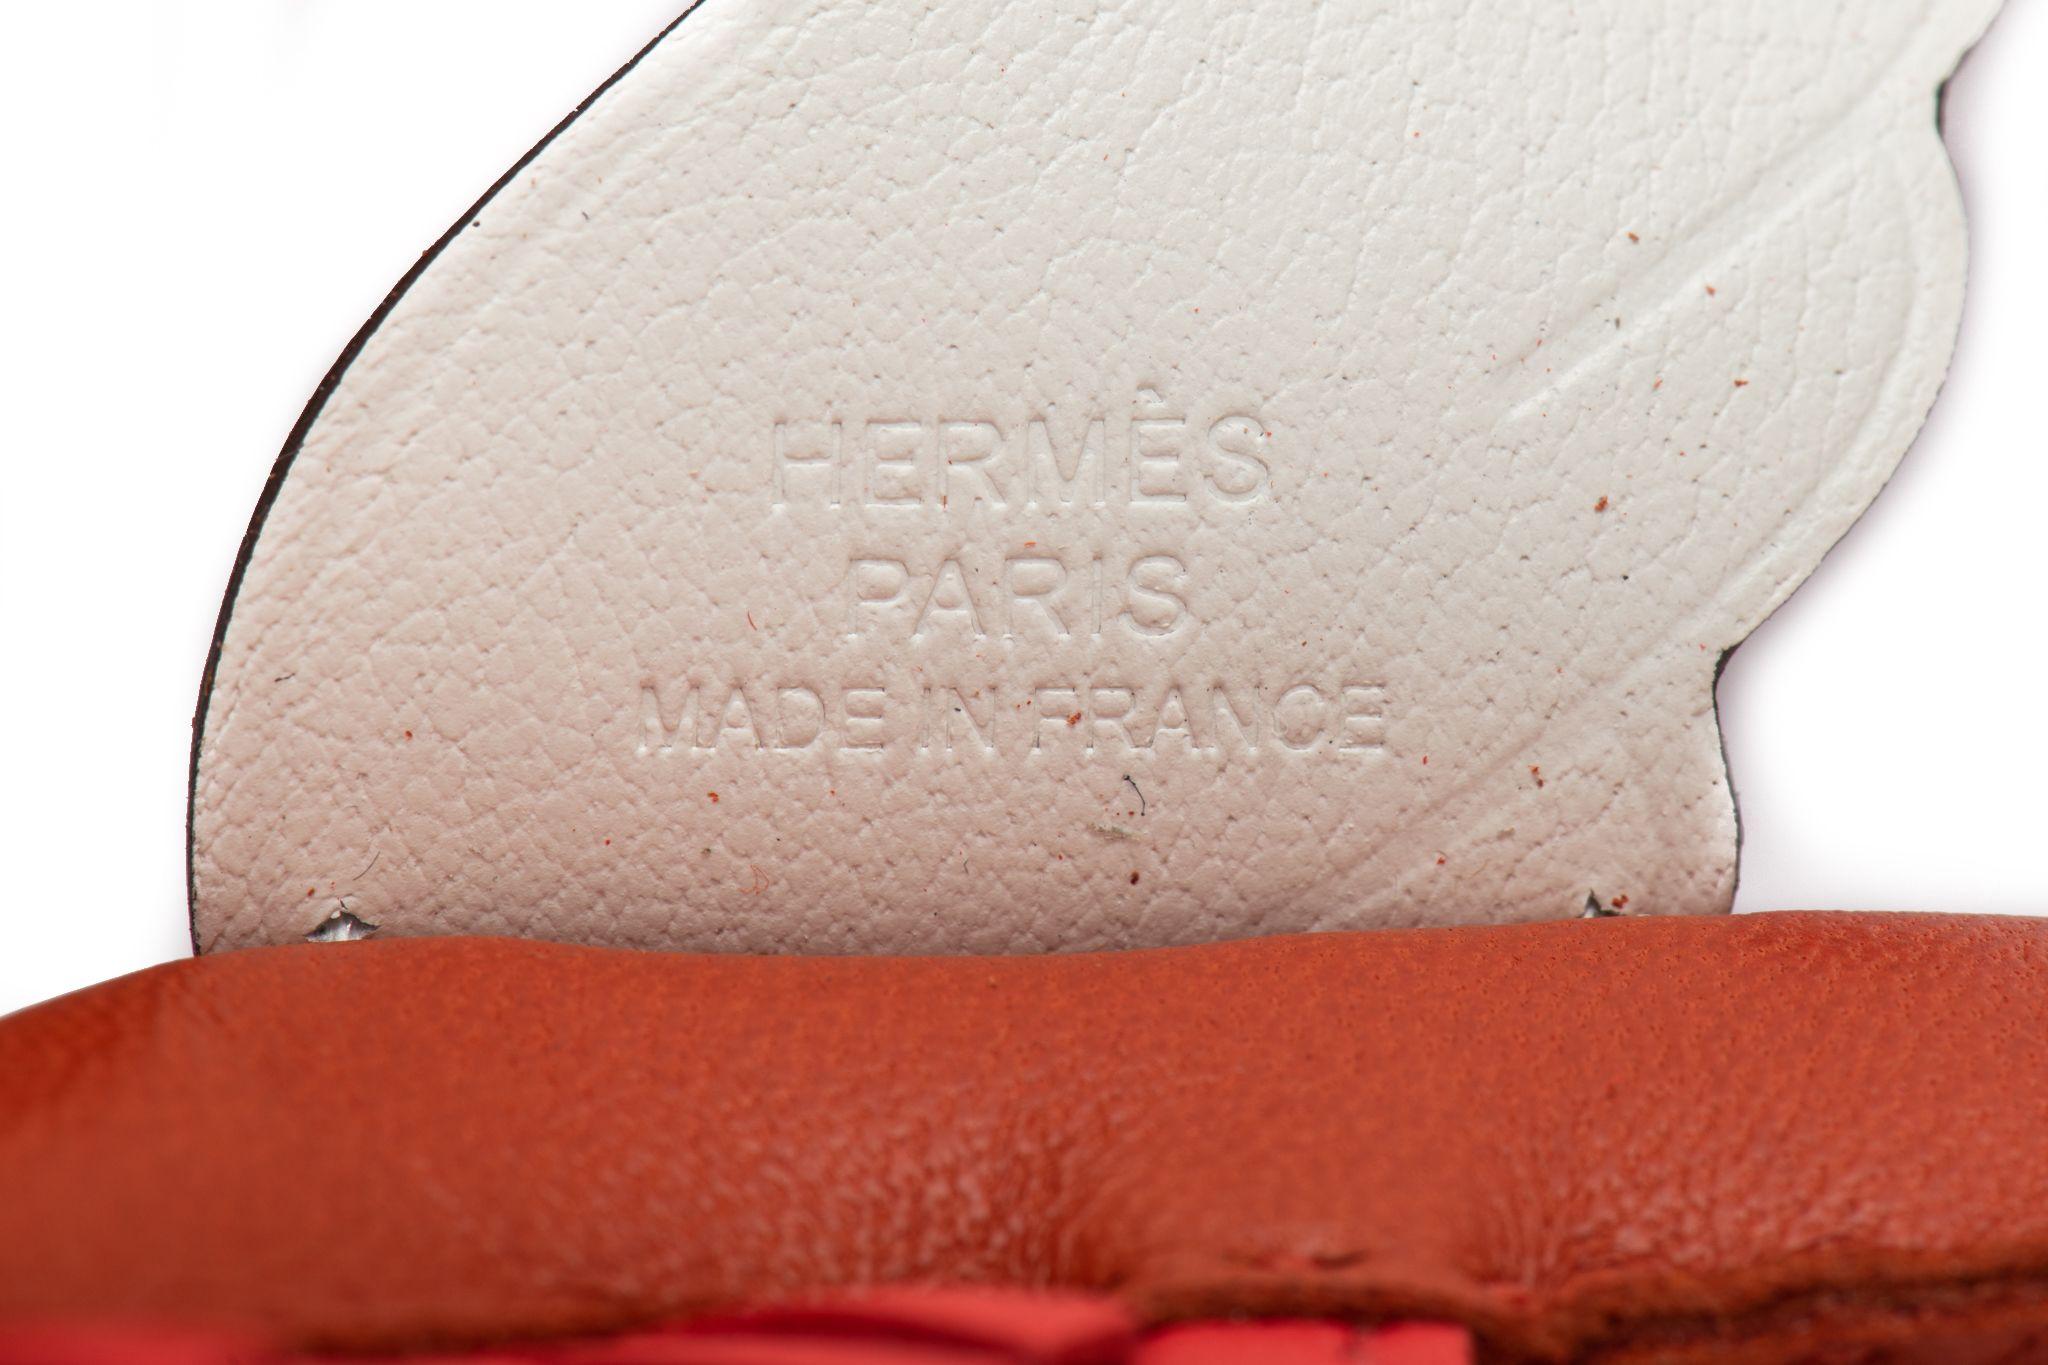 Hermès NIB Medium Pegase Bag Charm For Sale 2